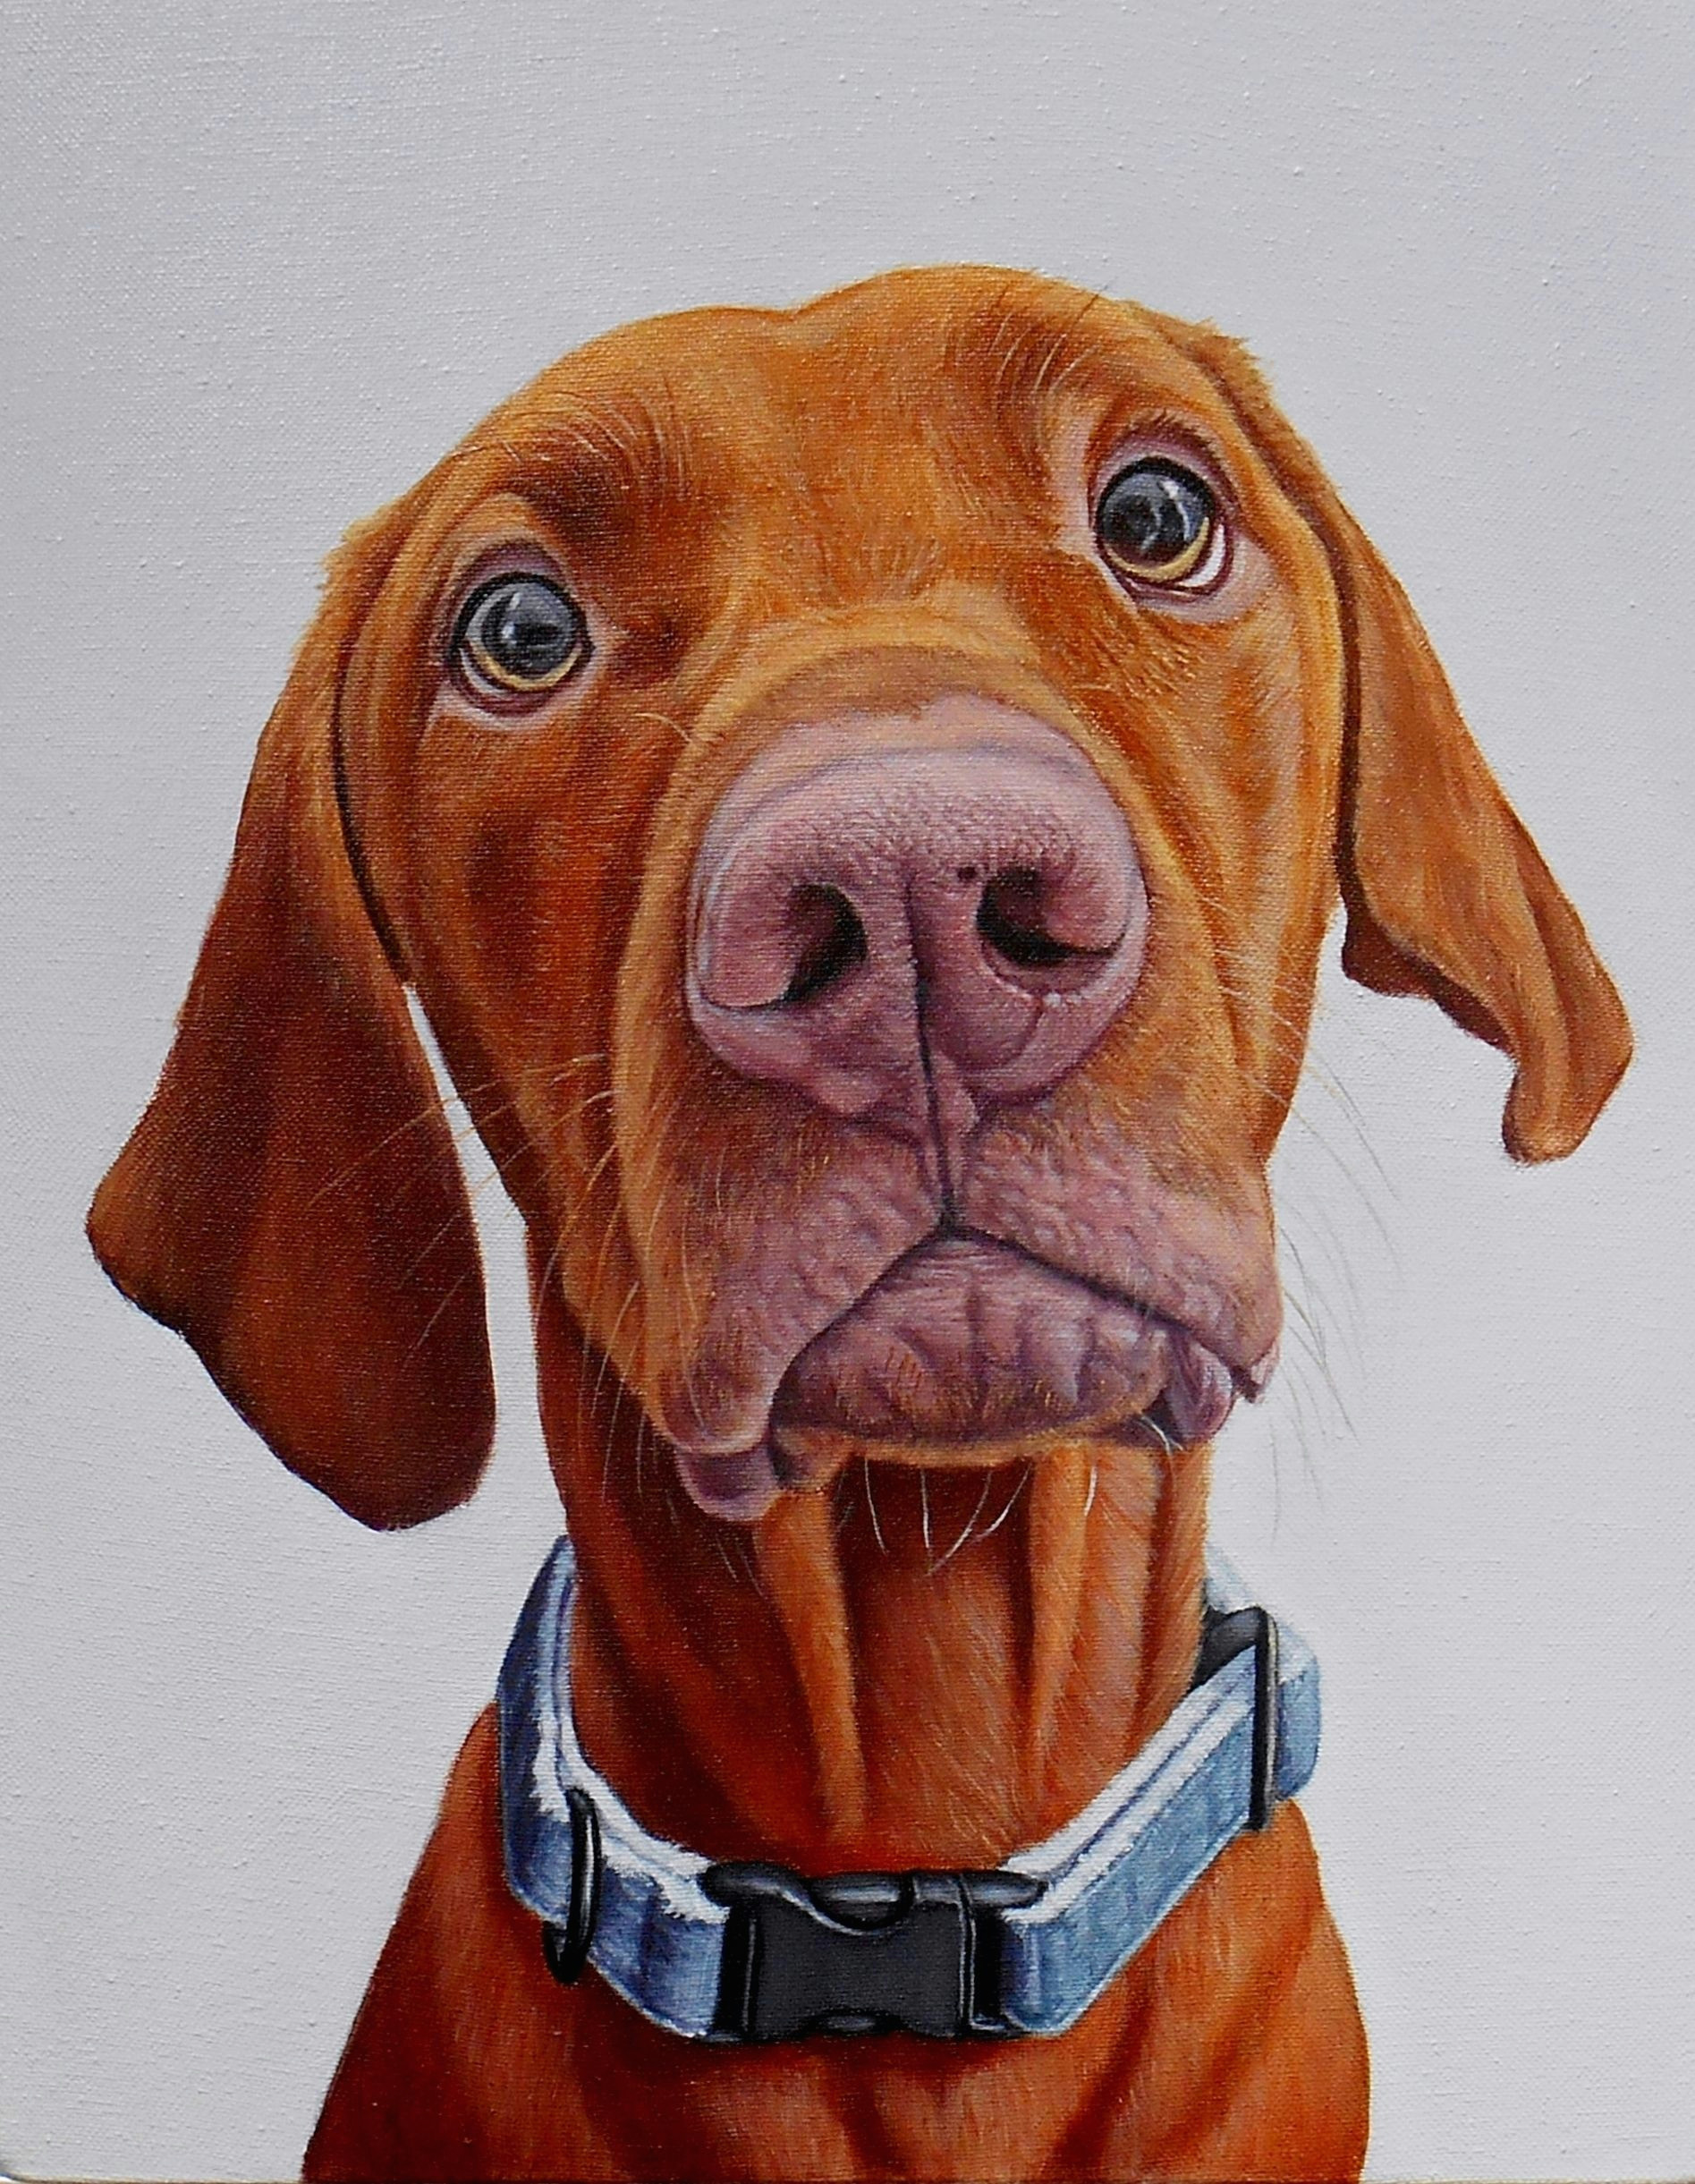 Drawing Funny Dogs D D N N D N D D D D N N N Lightshot Finley J Barker Dog Shop Dog Paintings